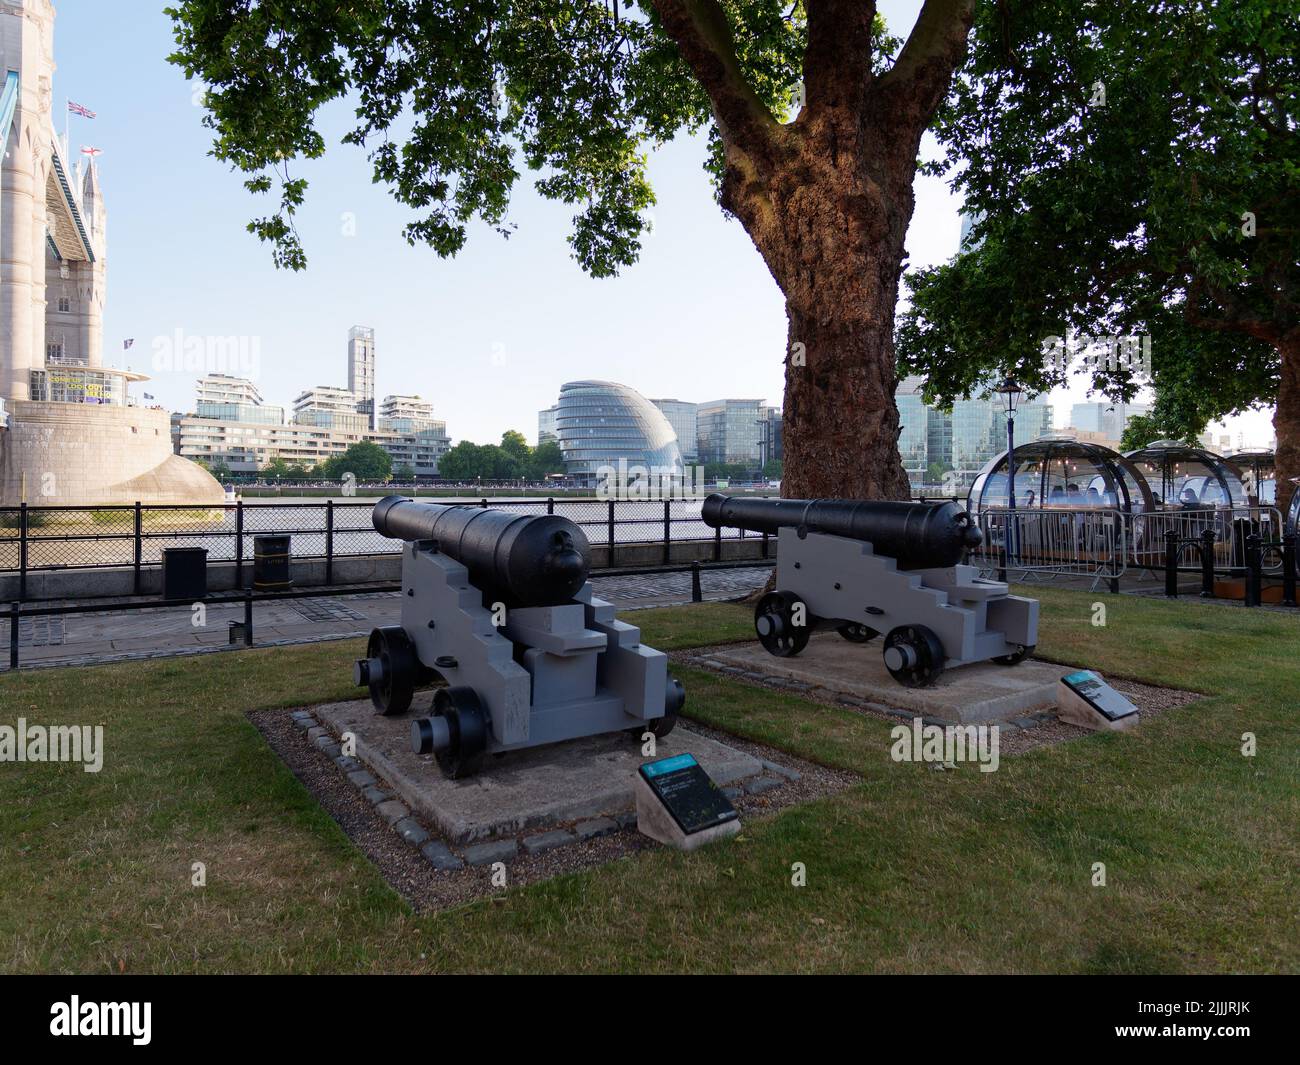 Londra, Grande Londra, Inghilterra, giugno 22 2022: Cannoni accanto al Tamigi con City Hall e Tower Bridge e ristorante Glass Rooms. Foto Stock